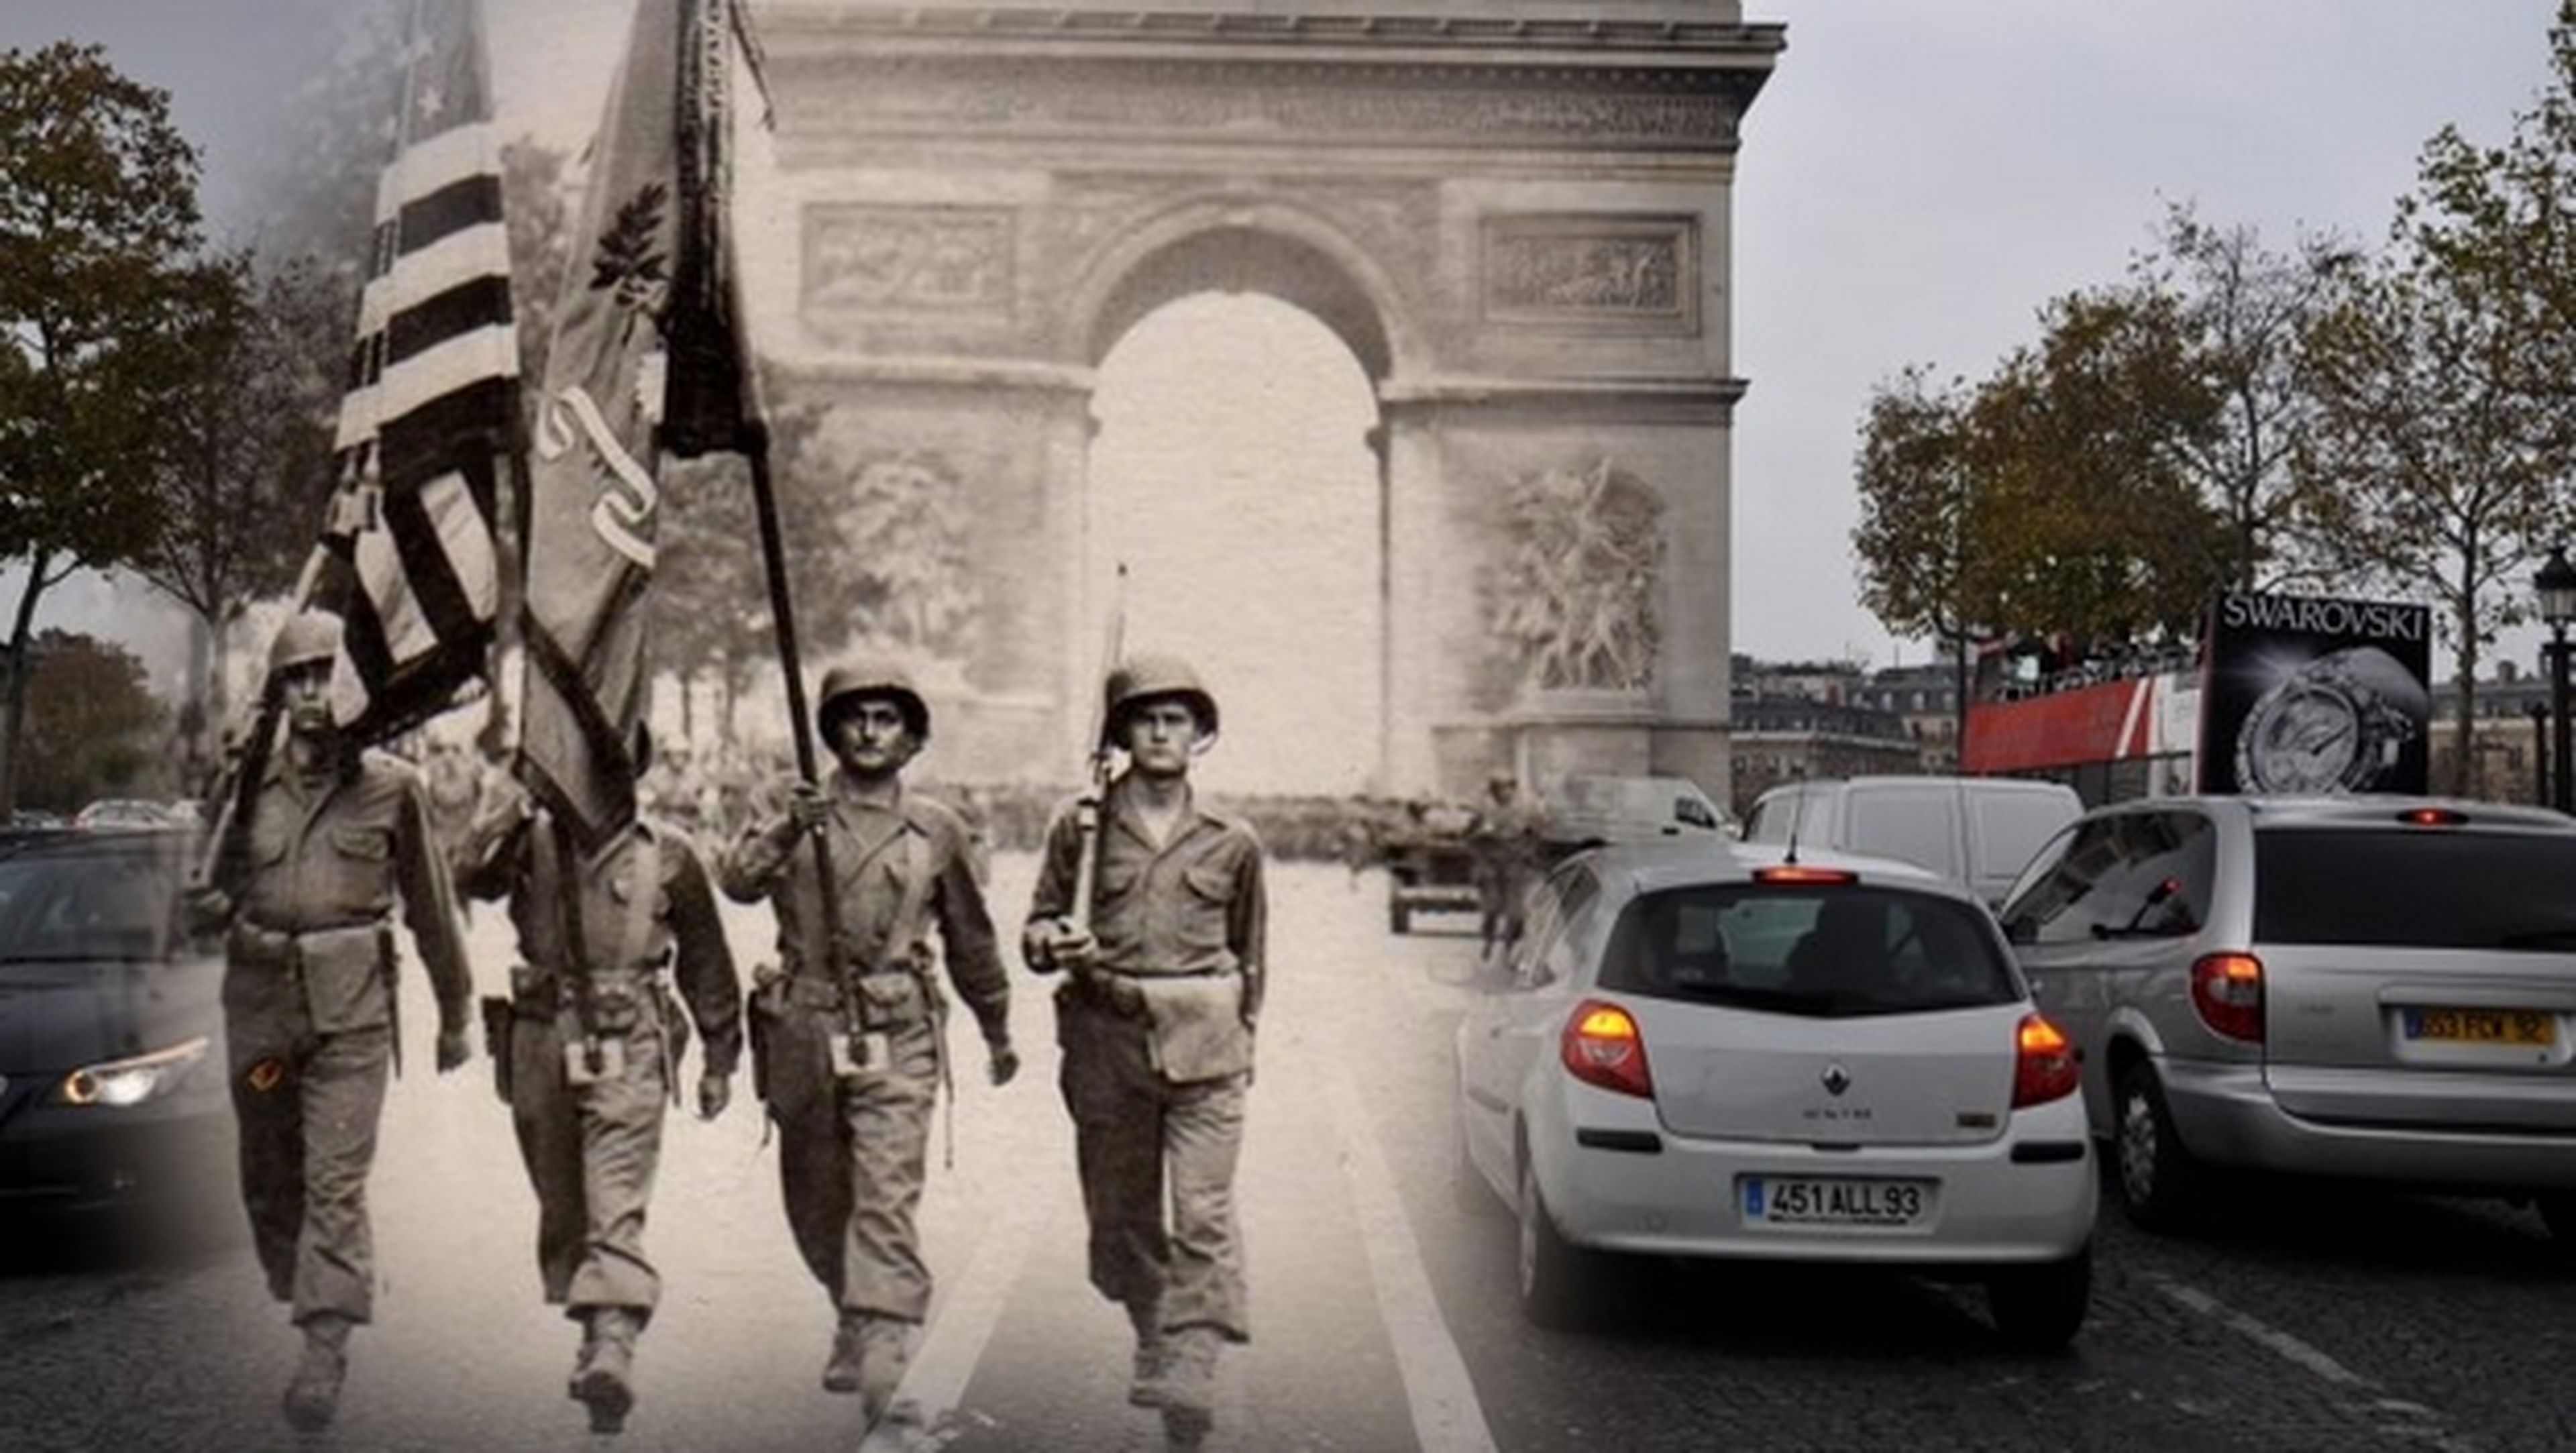 Ghosts of History, fotos de la Segunda Guerra Mundial fundidas con imágenes actuales en la misma localización.